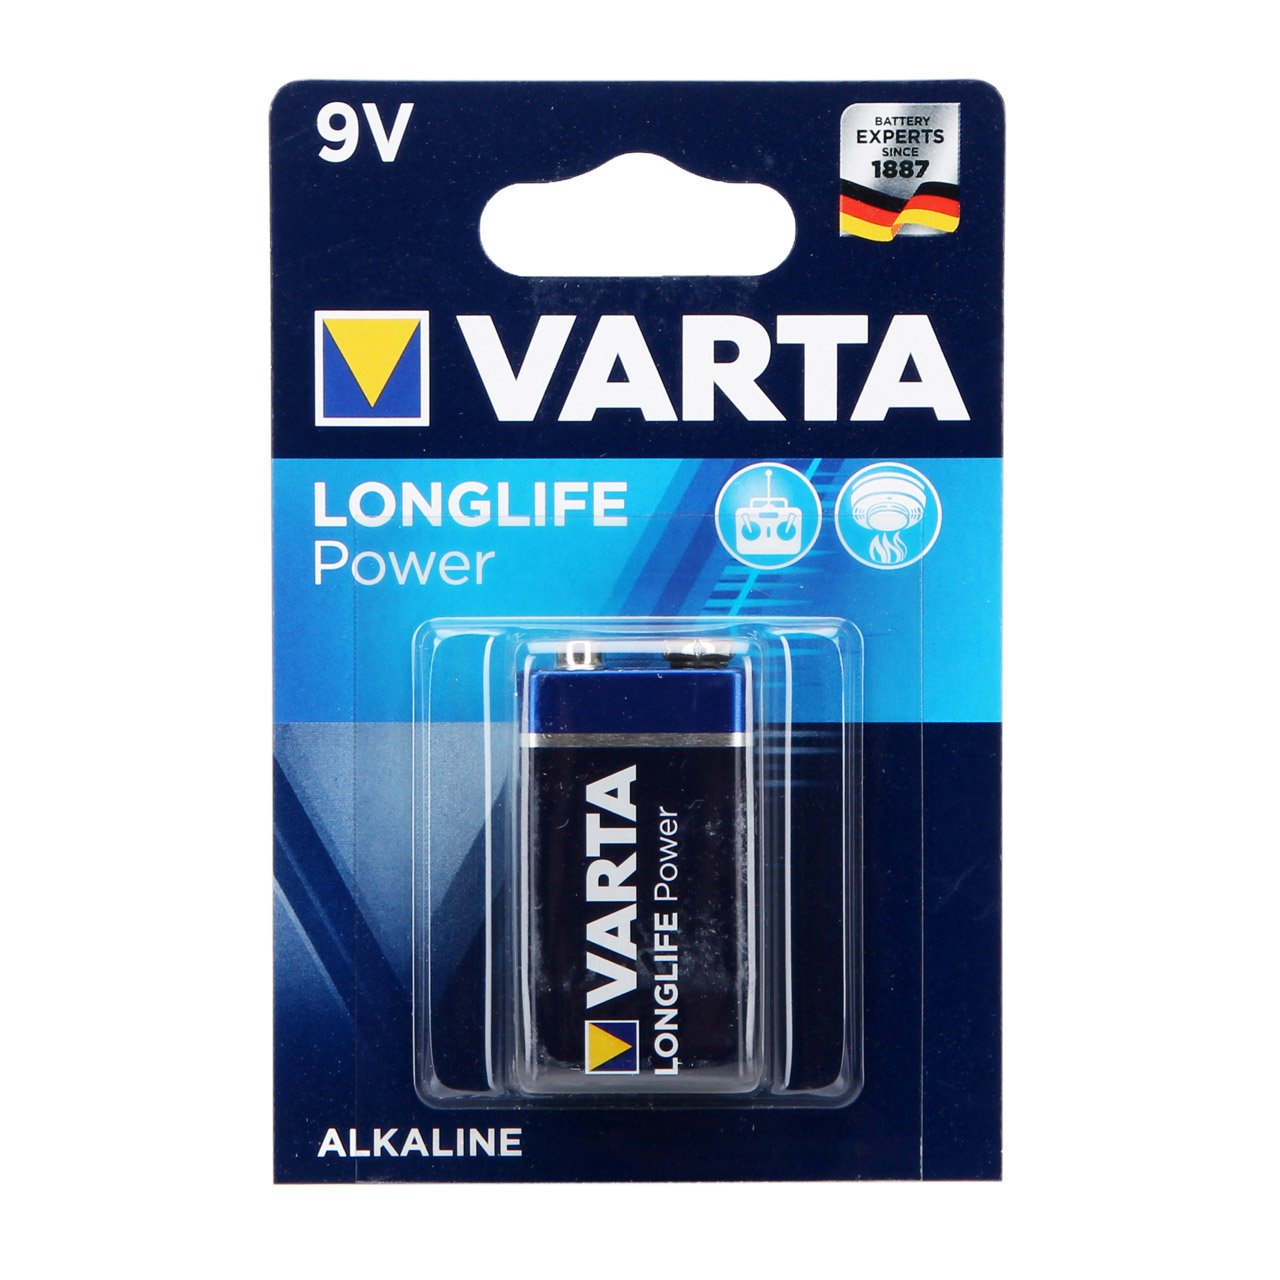 VARTA Batterie LONGLIFE POWER Alkaline E-Block 6LR61 9V